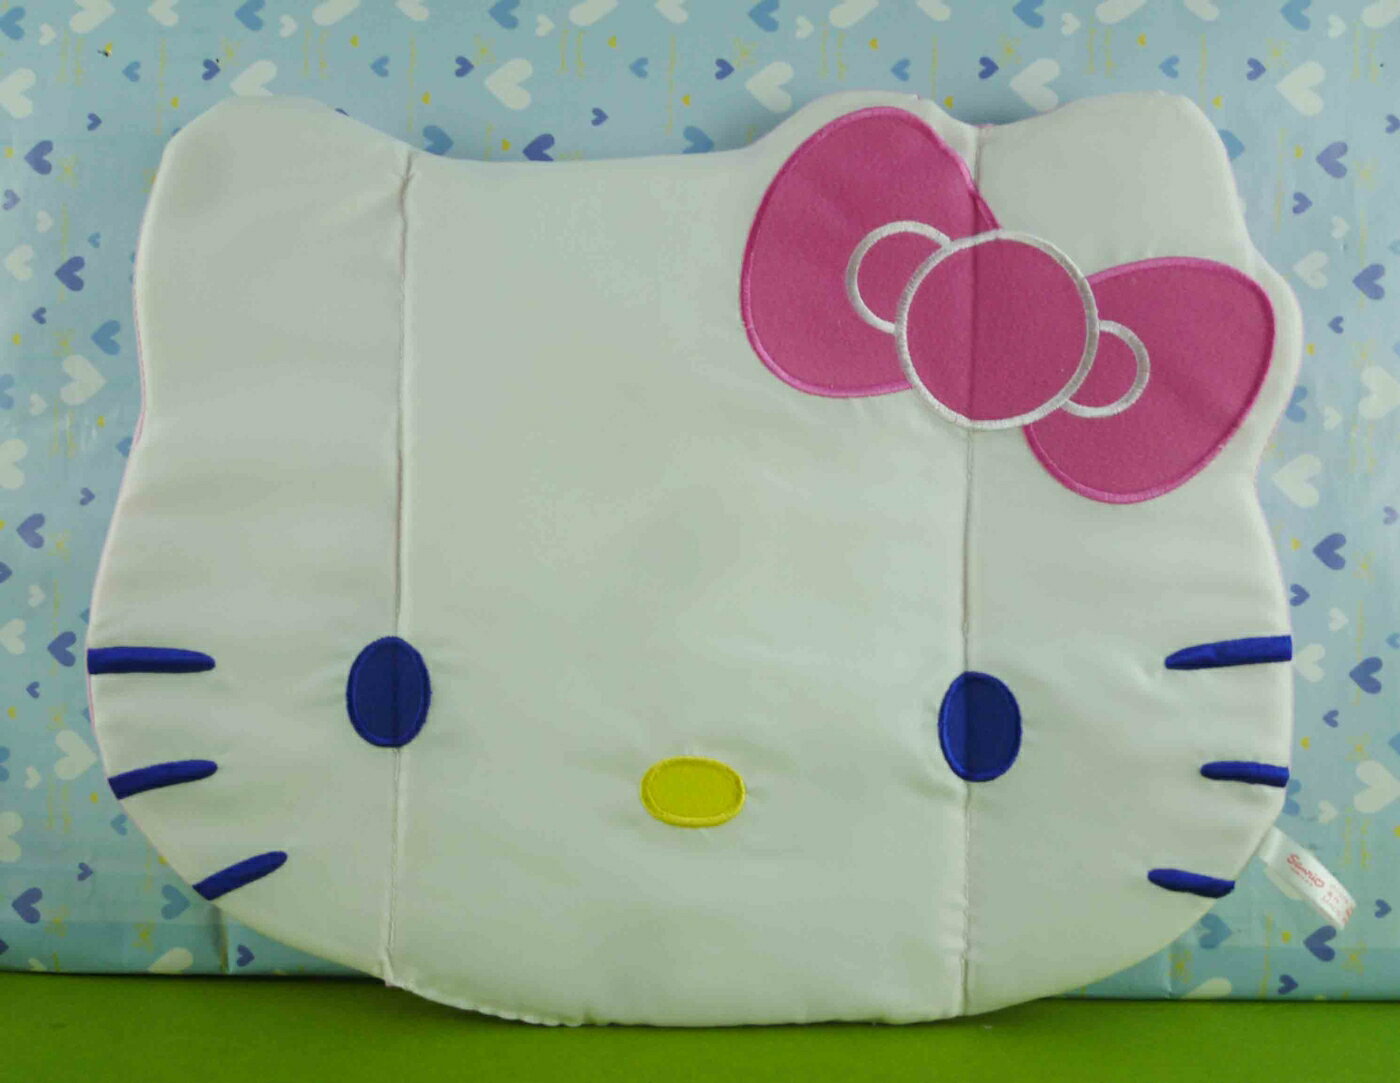 【震撼精品百貨】Hello Kitty 凱蒂貓 造型餐墊-頭型【共1款】 震撼日式精品百貨